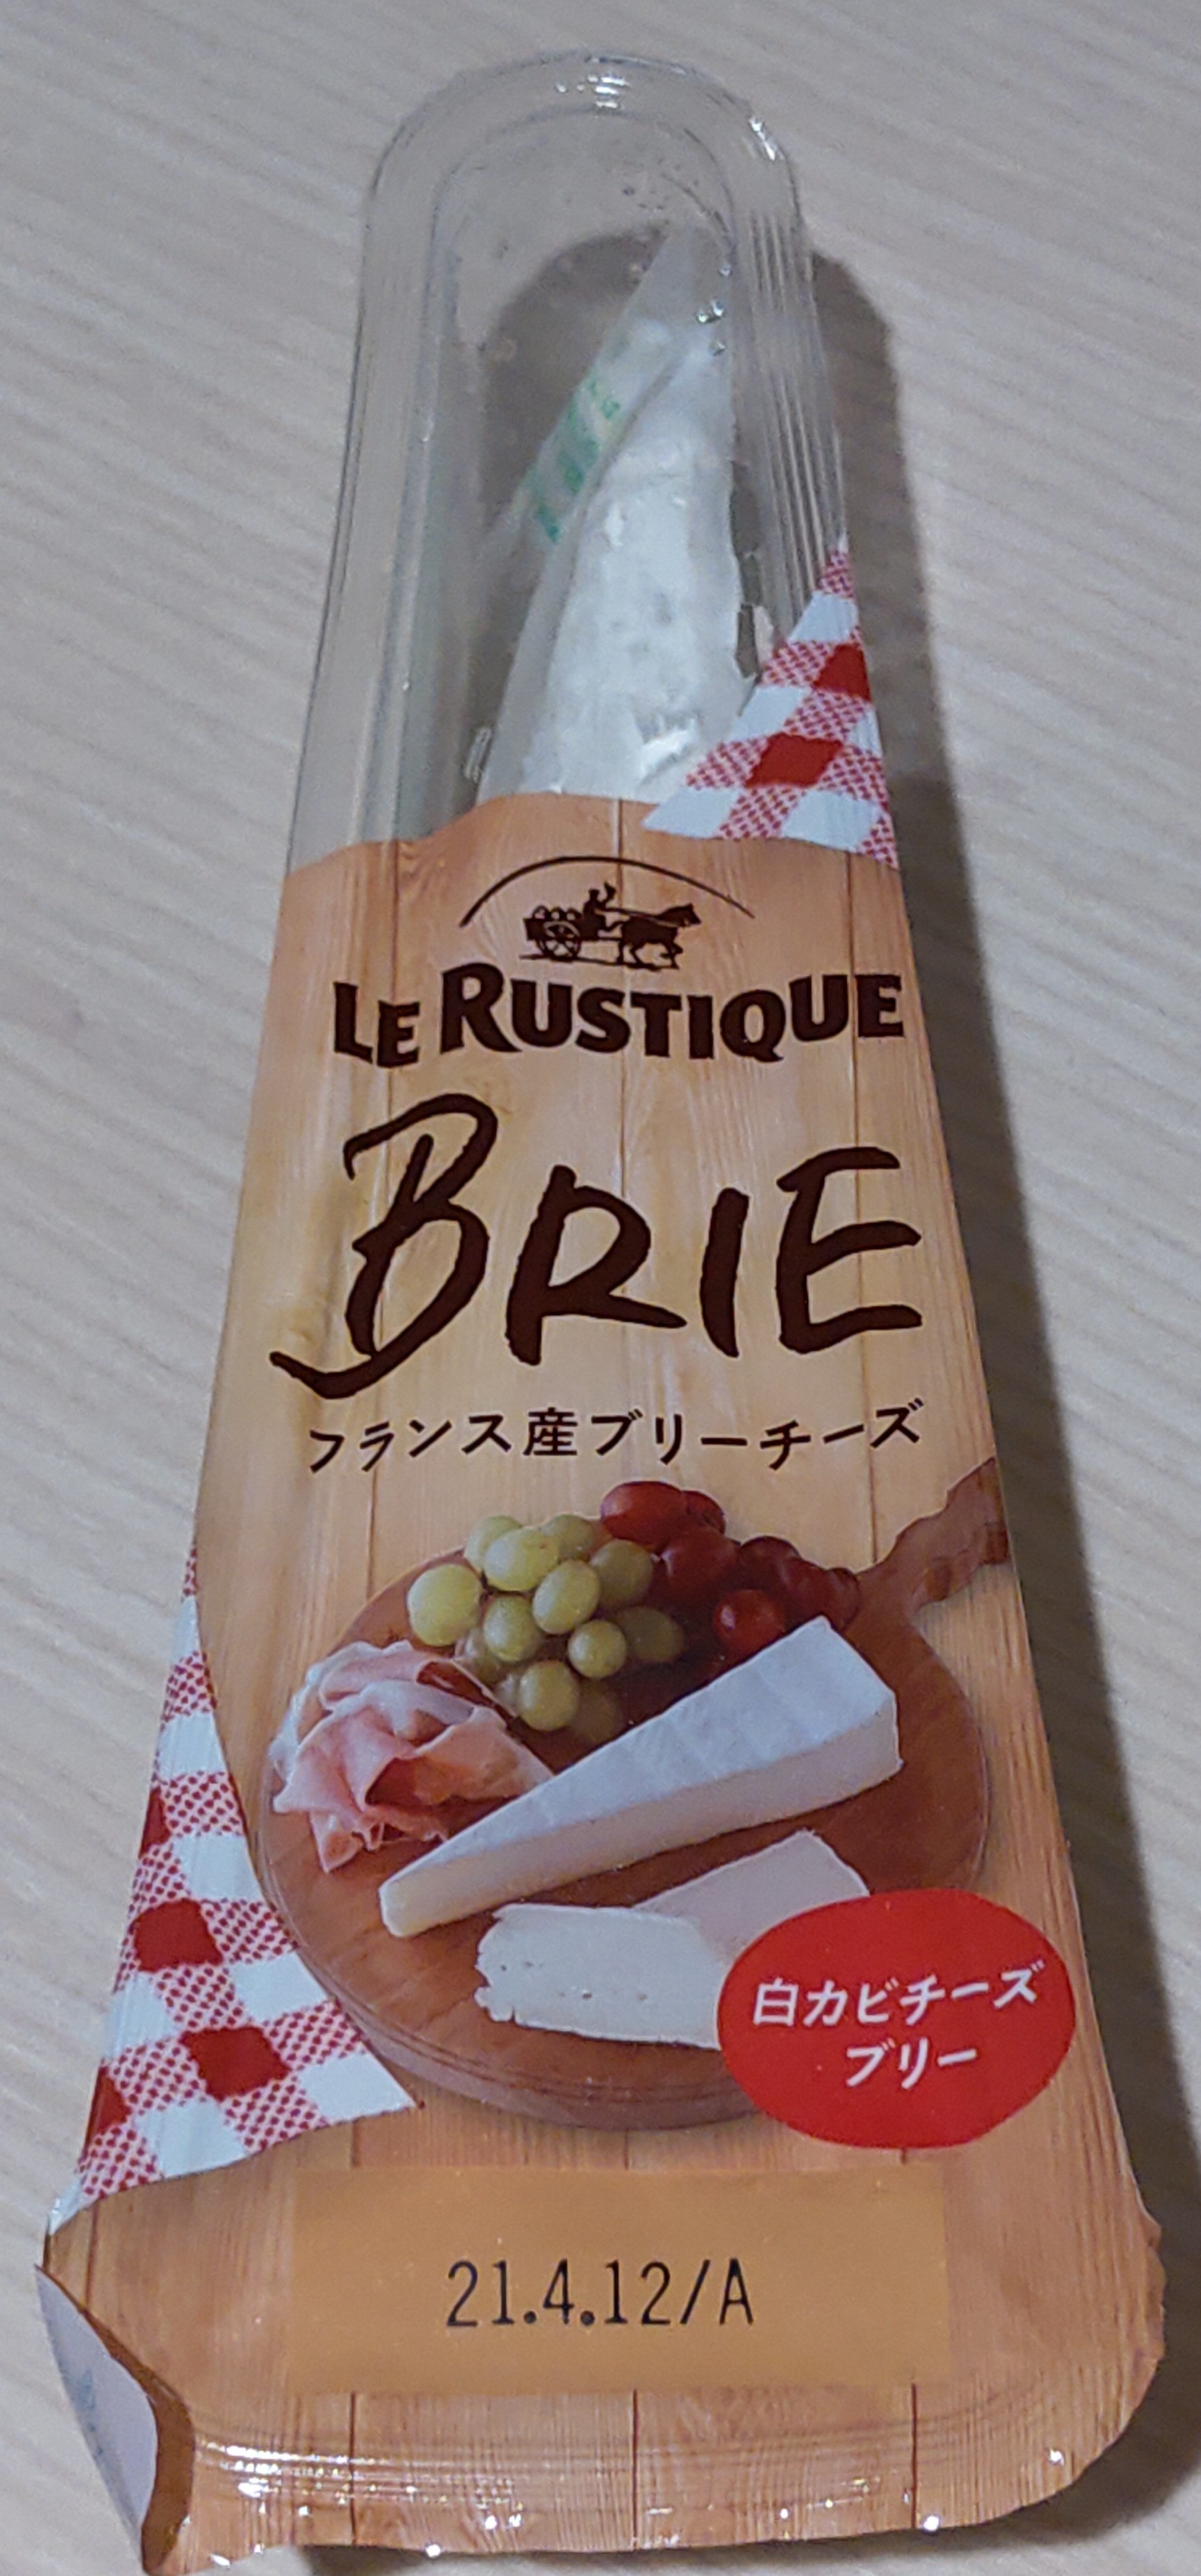 Brie de France - 製品